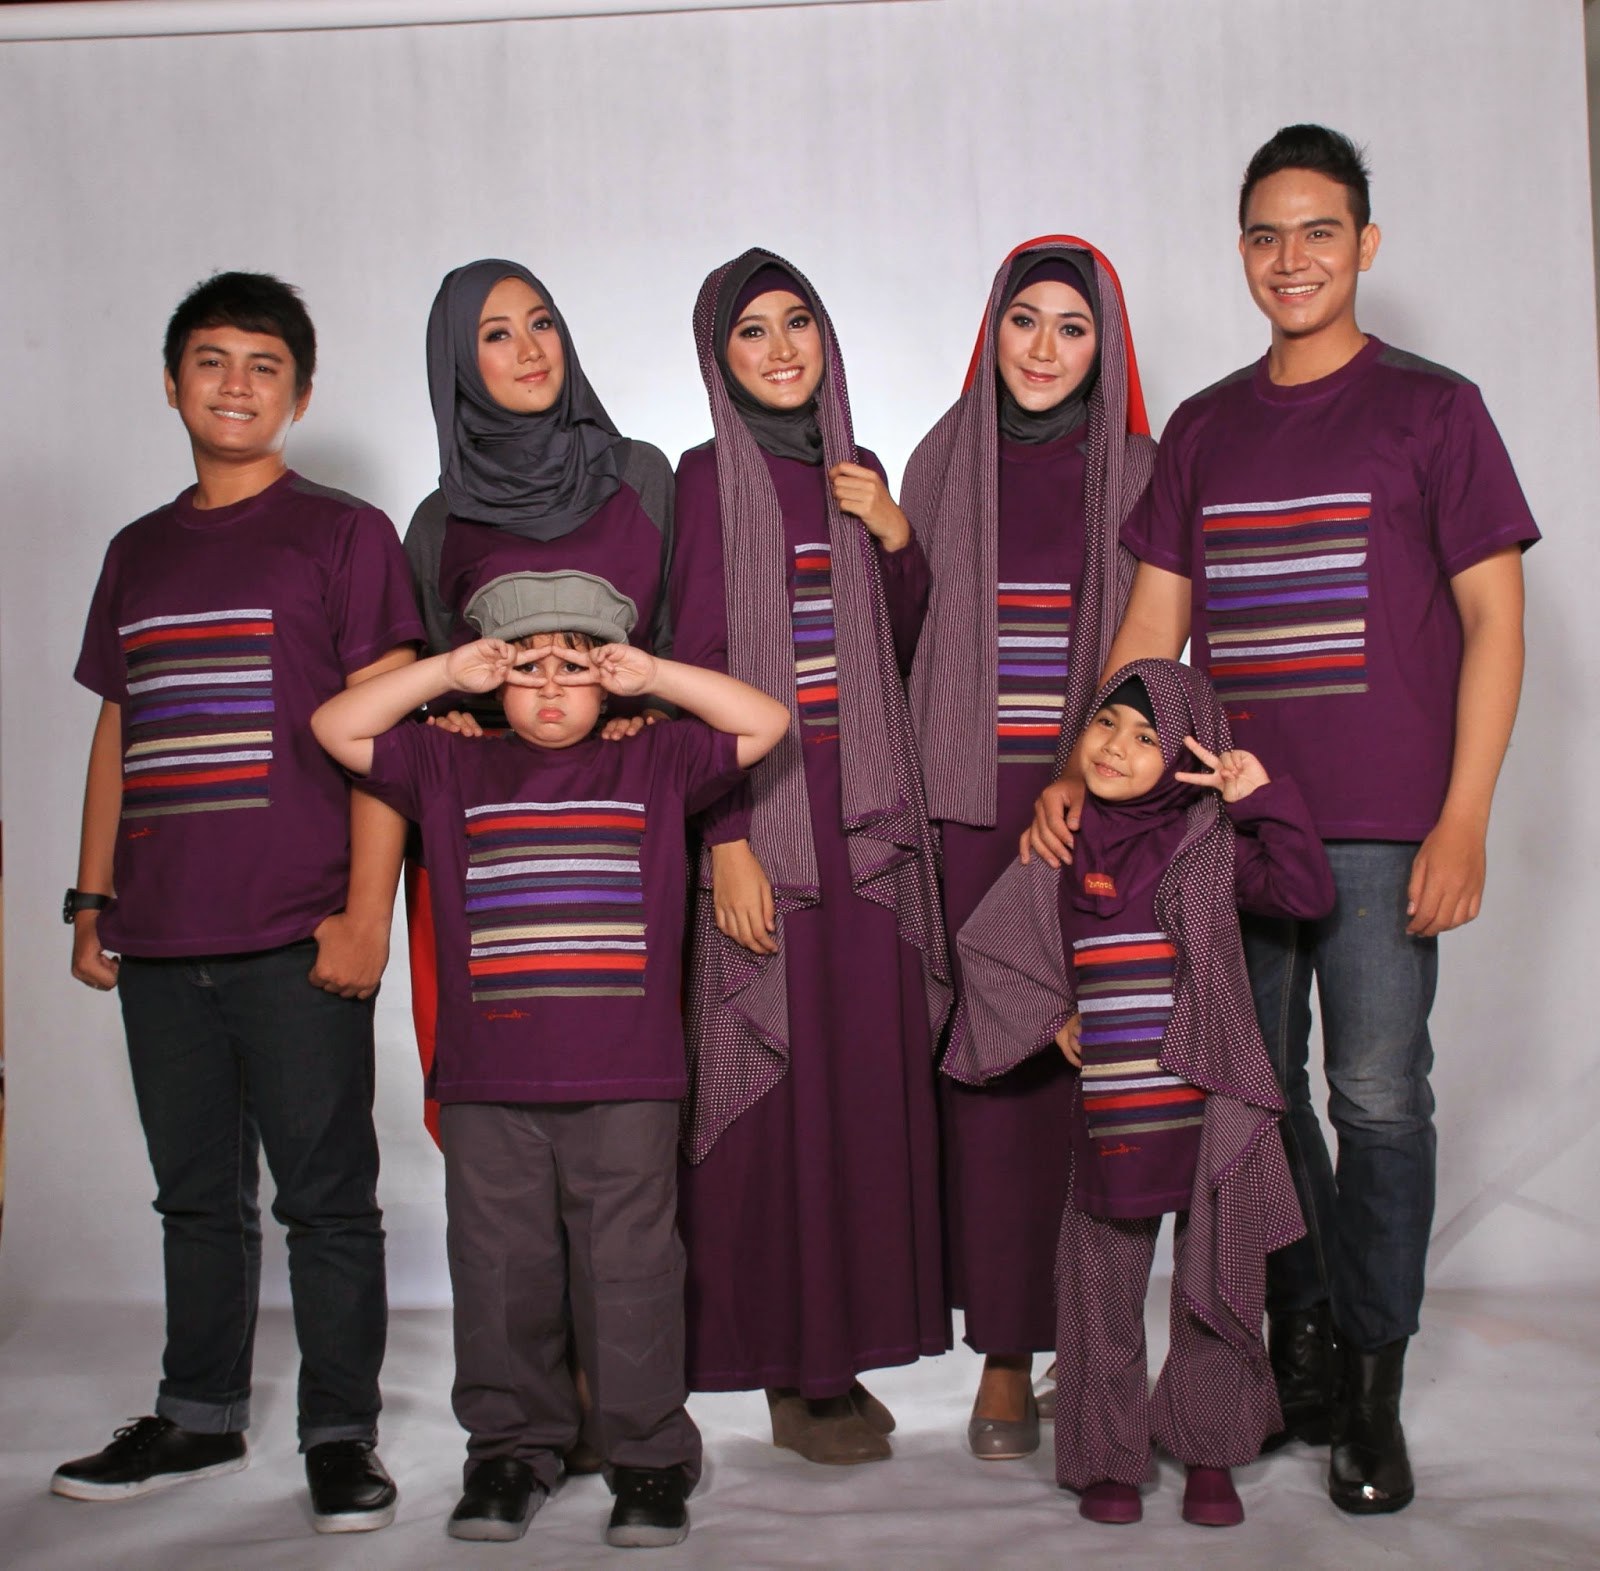 Inspirasi Baju Lebaran Anak 2018 8ydm Model Baju Keluarga Untuk Hari Raya Lebaran 2018